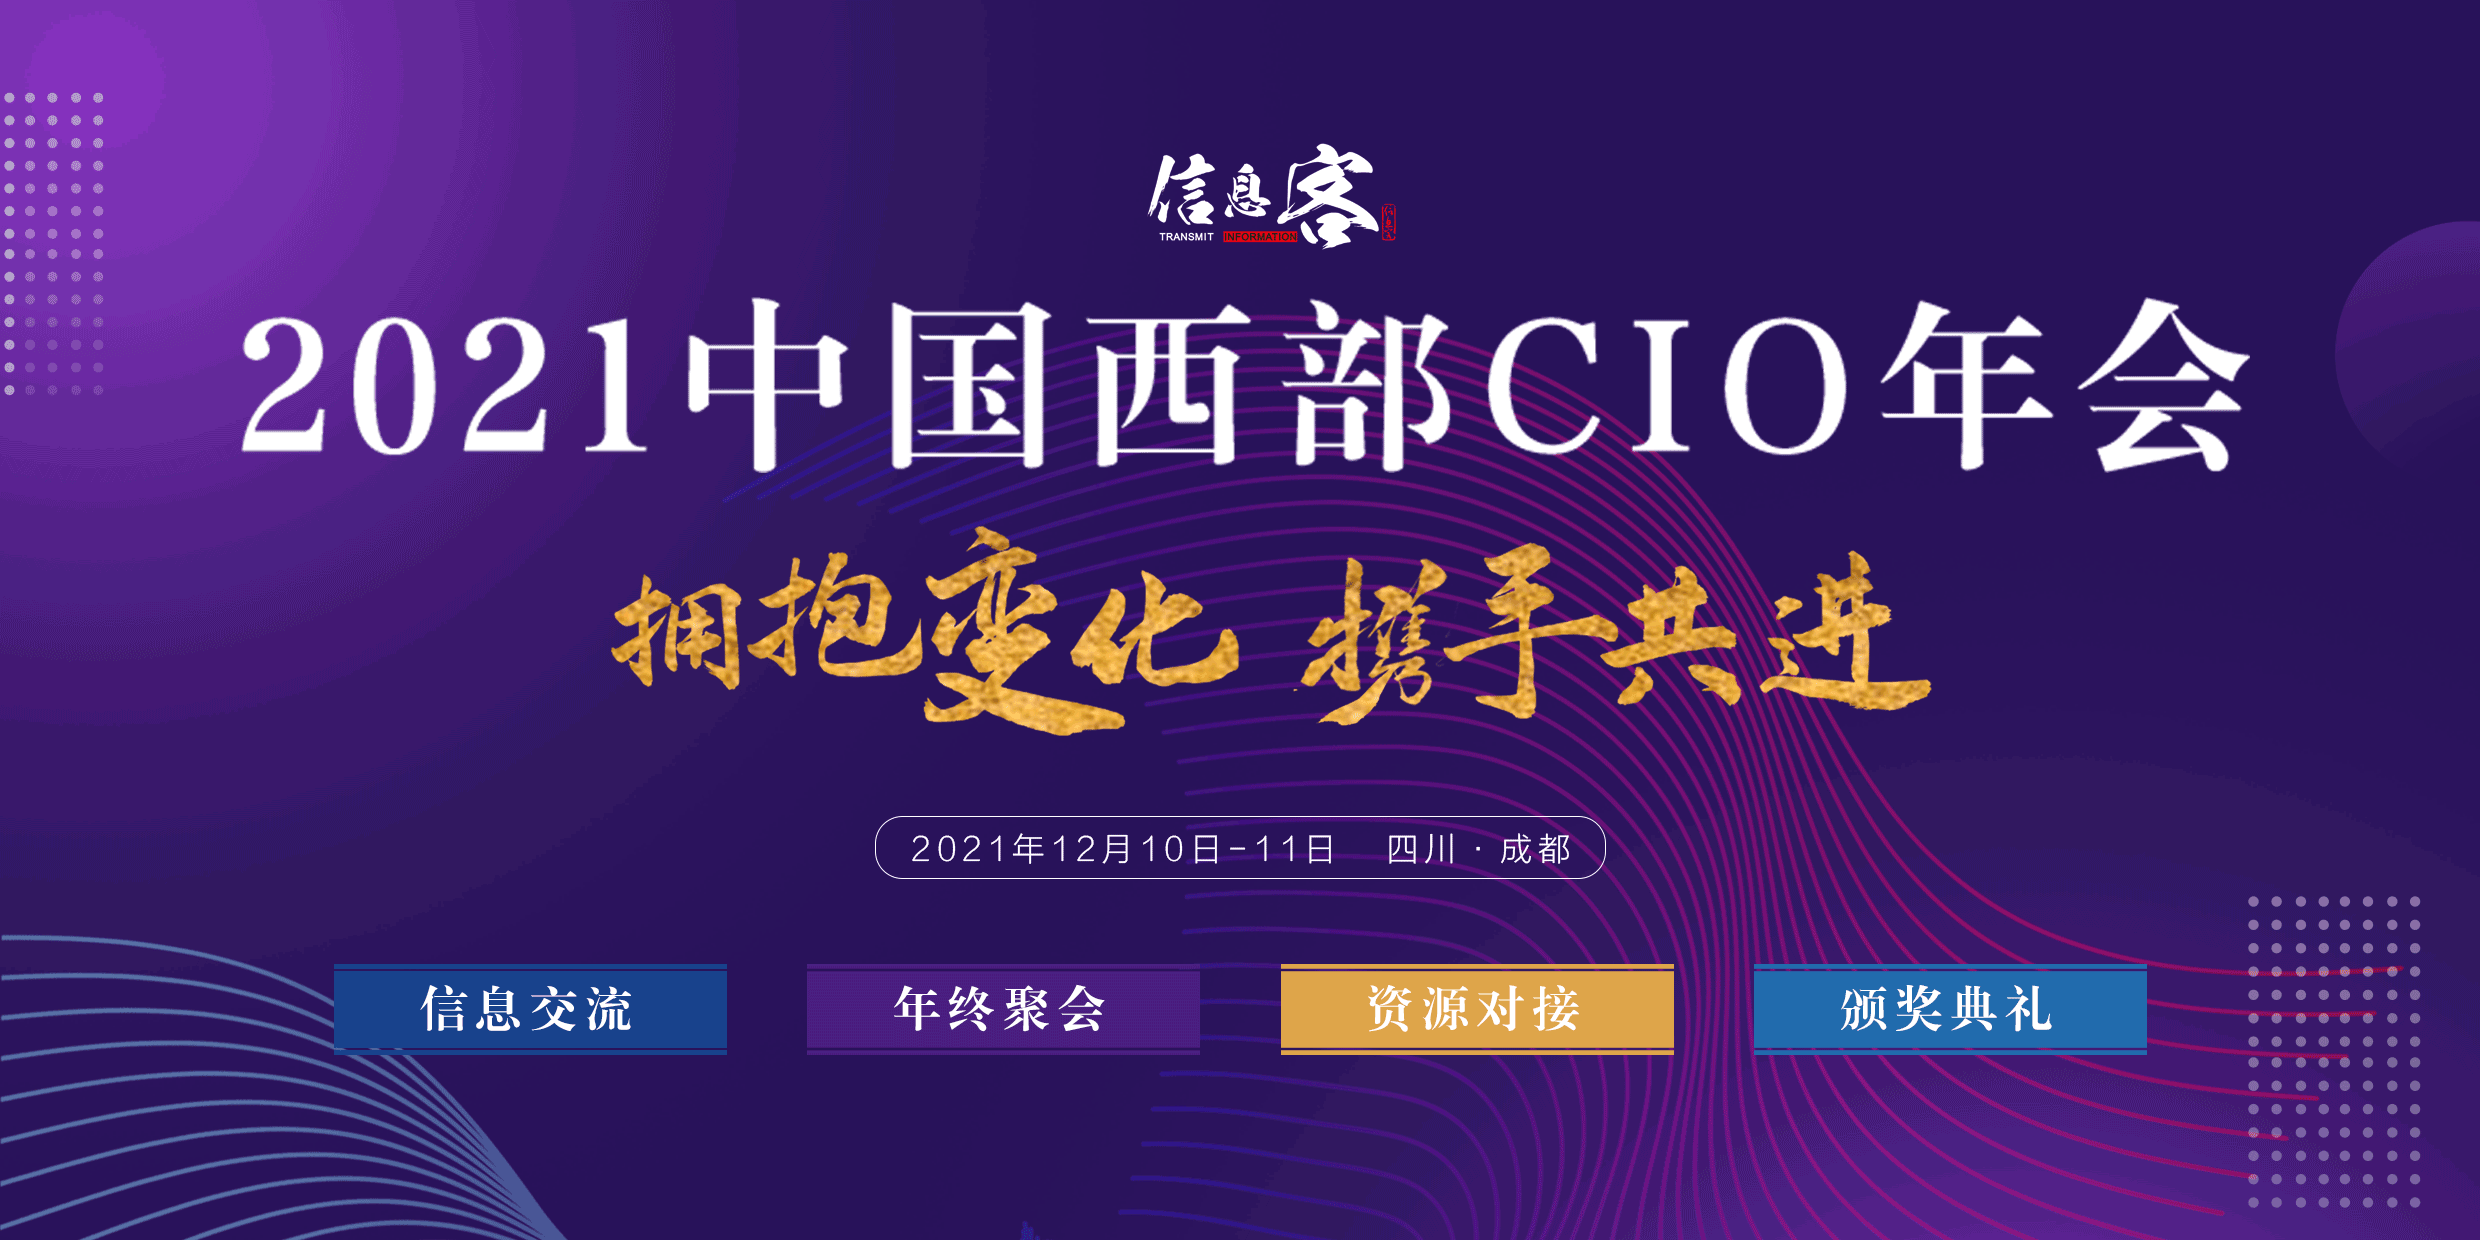 2021中国西部CIO年会正式启动 